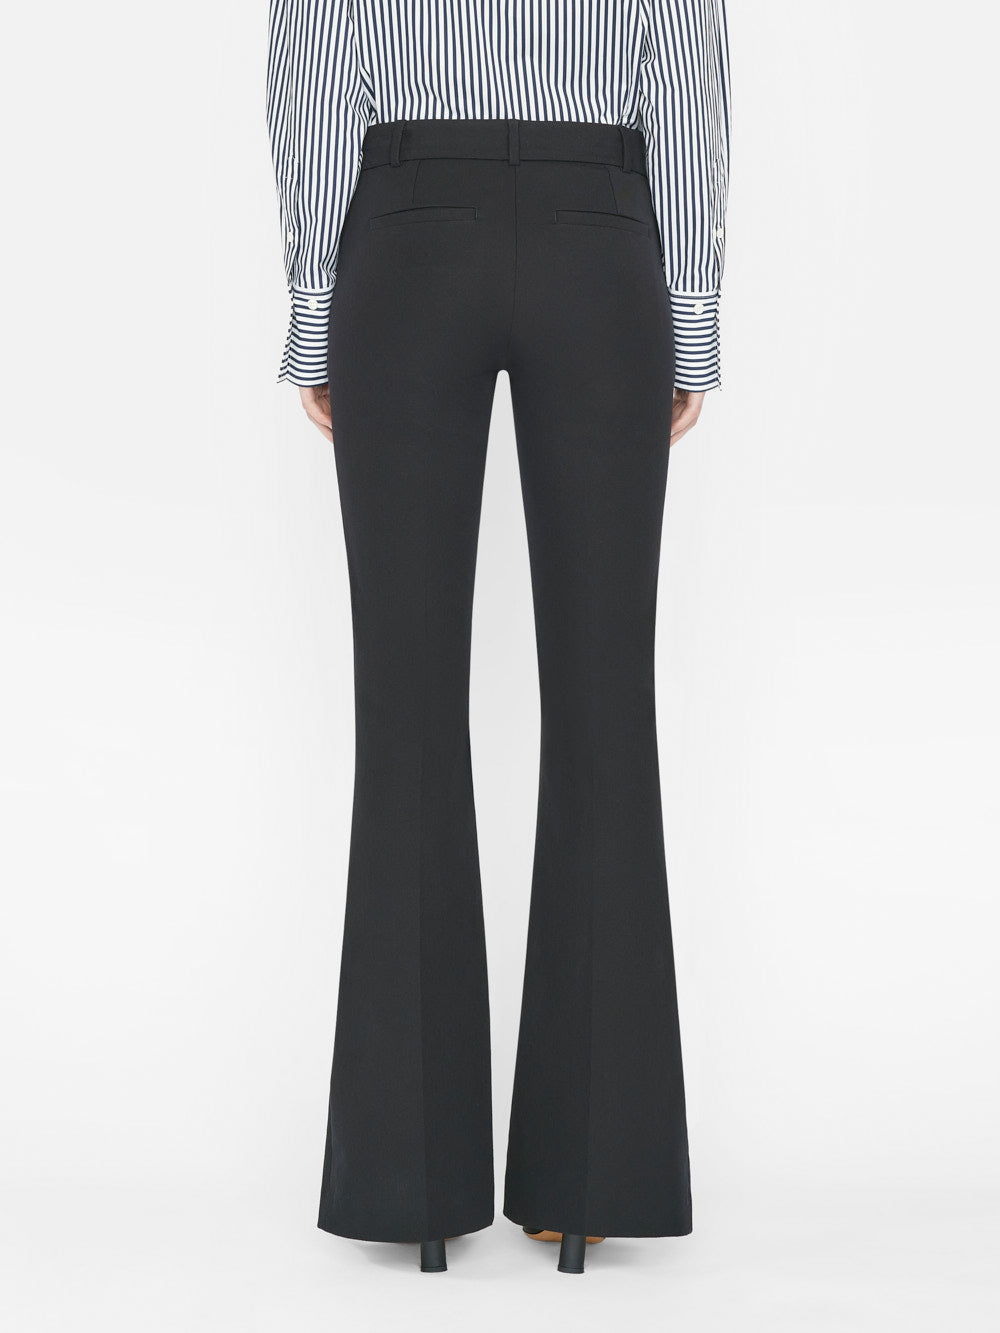 Women's High Waisted Drawstring Zipper Side Pocket Plain Wide Leg